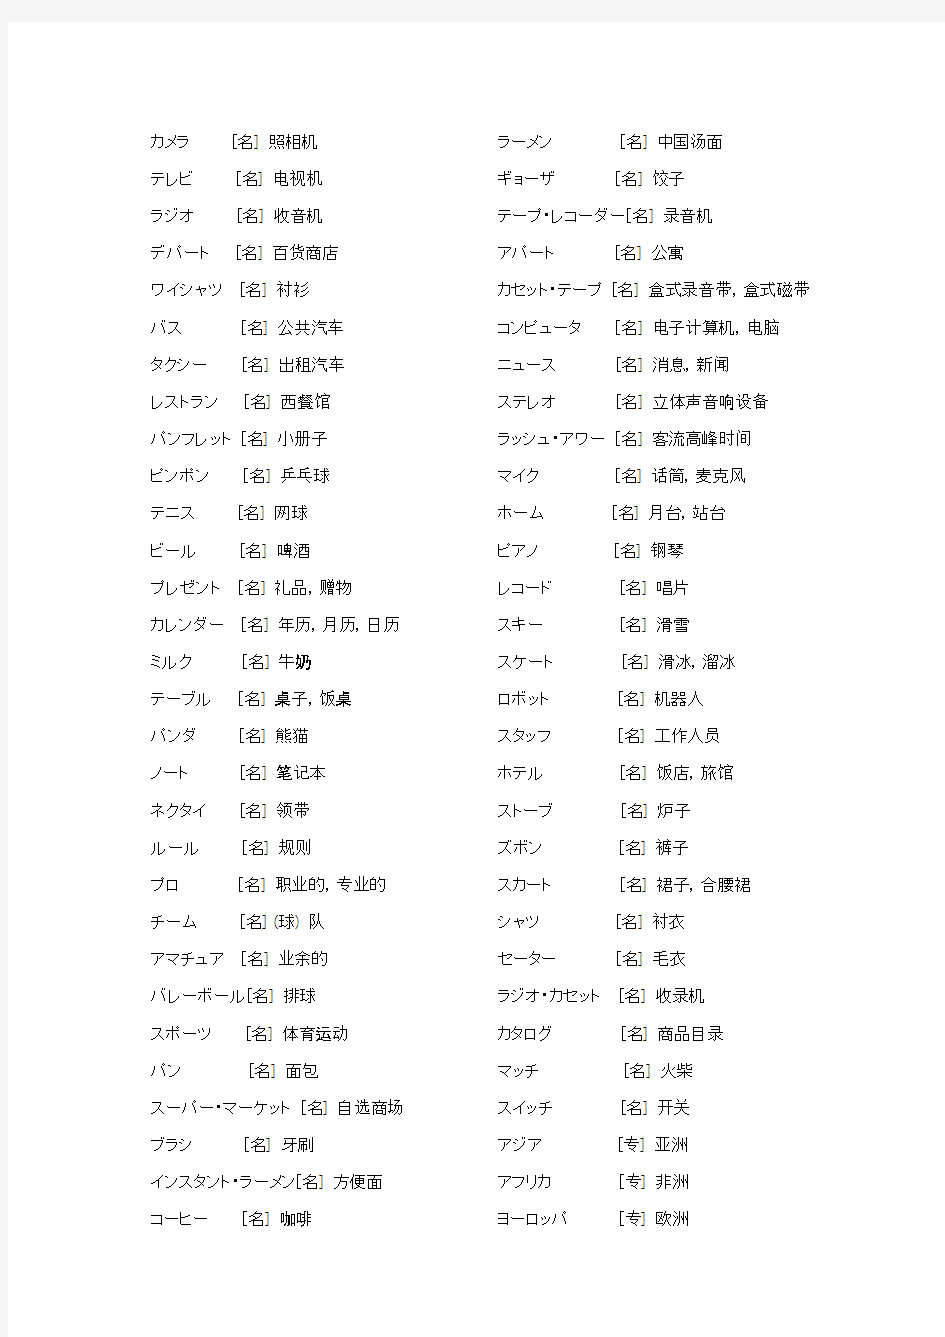 老版标准日本语外来语汇总(初级)